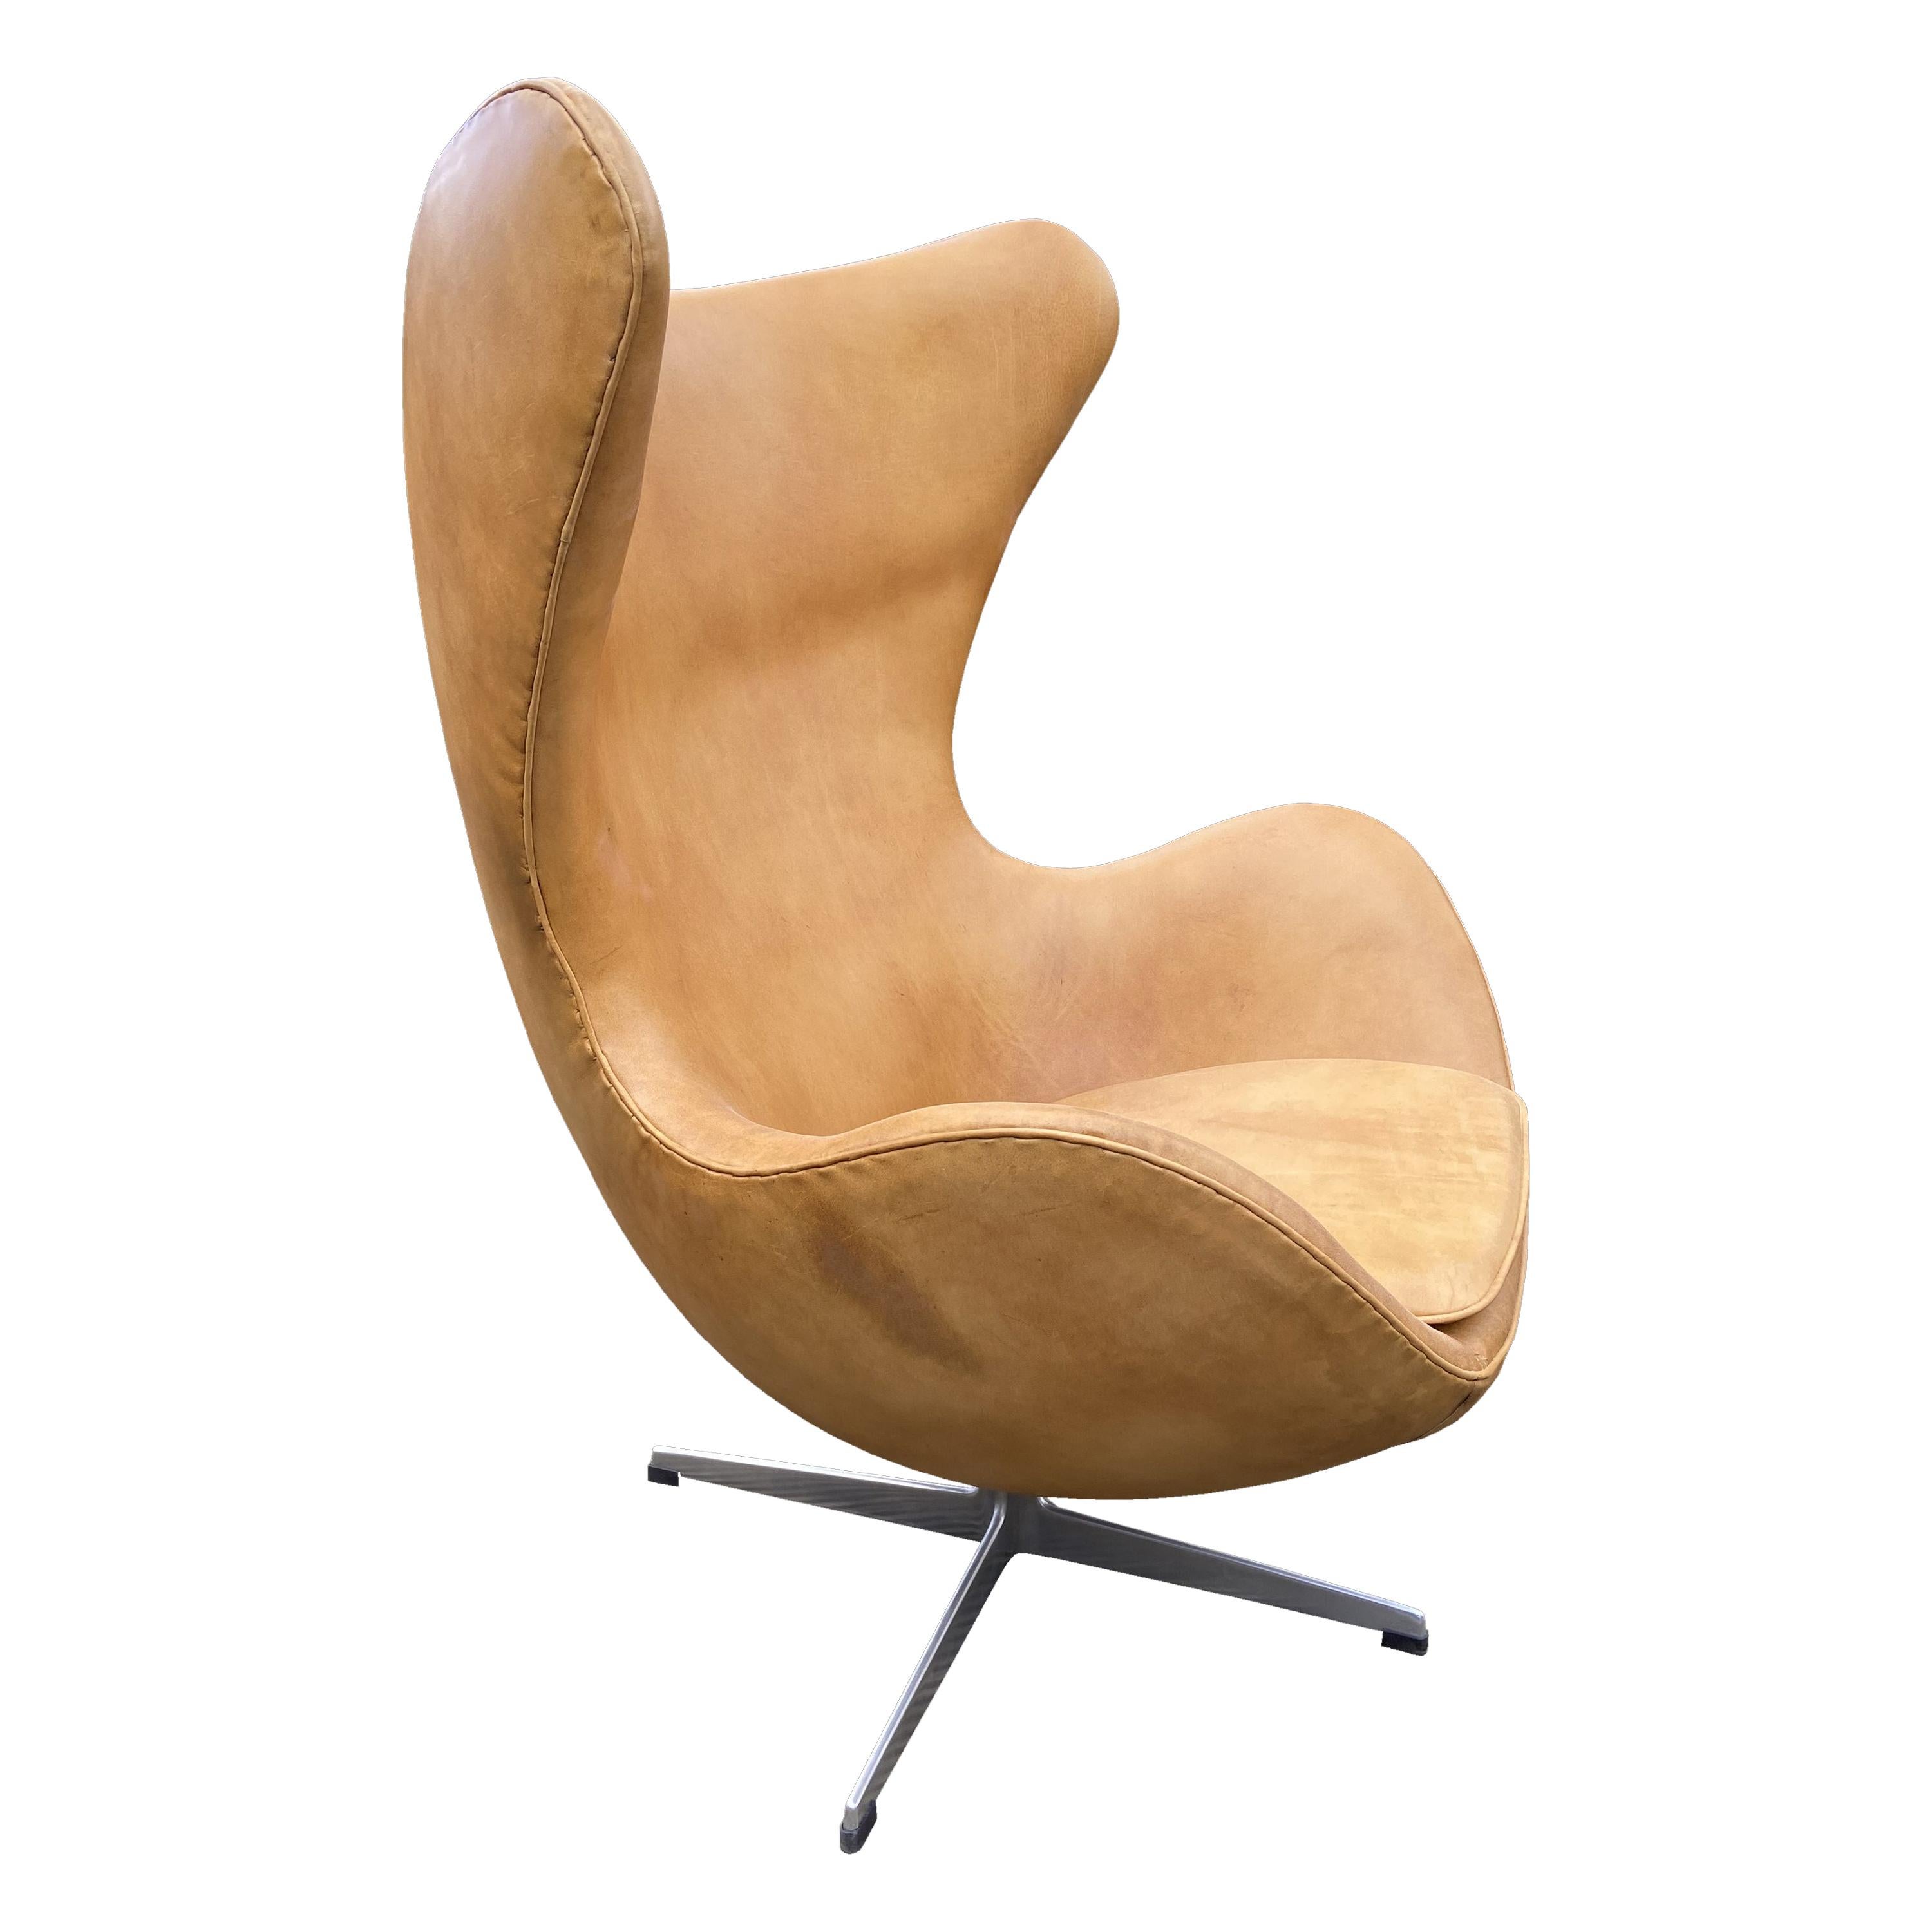 Original Tan Leather Egg Chair by Arne Jacobsen for Fritz Hansen